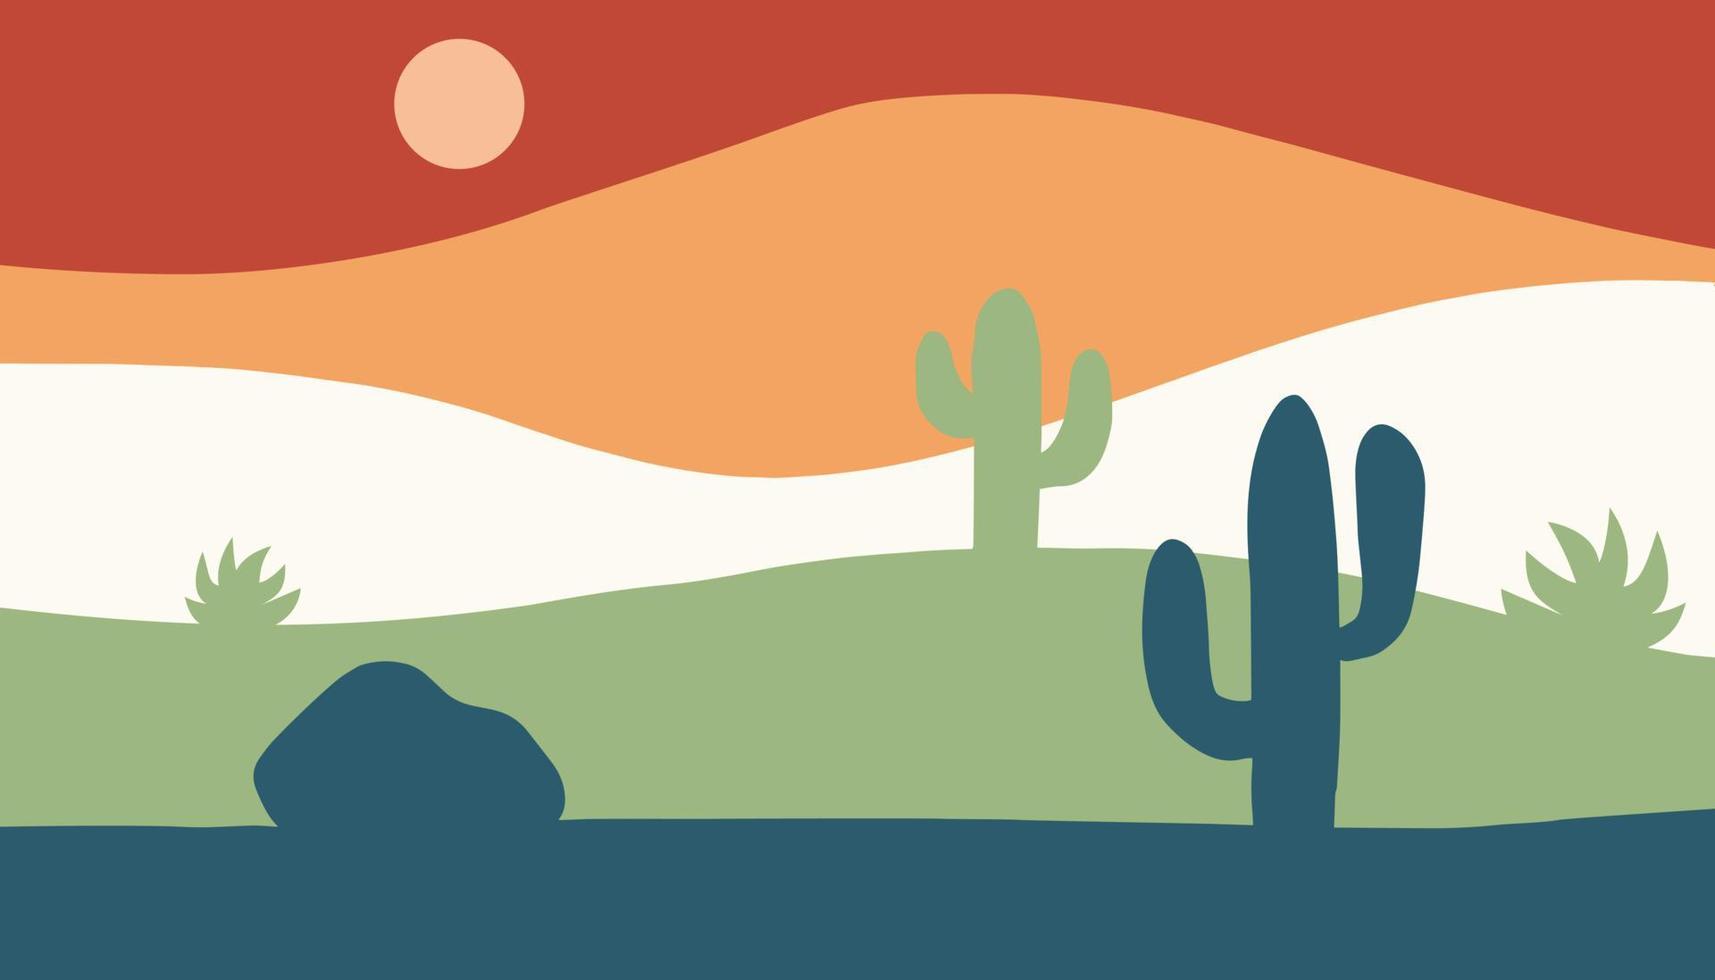 vetor de fundo contemporâneo minimalista. paisagem montanhosa do deserto do sudoeste com cactos em um estilo simples. papel de parede ou banner para web e mídias sociais